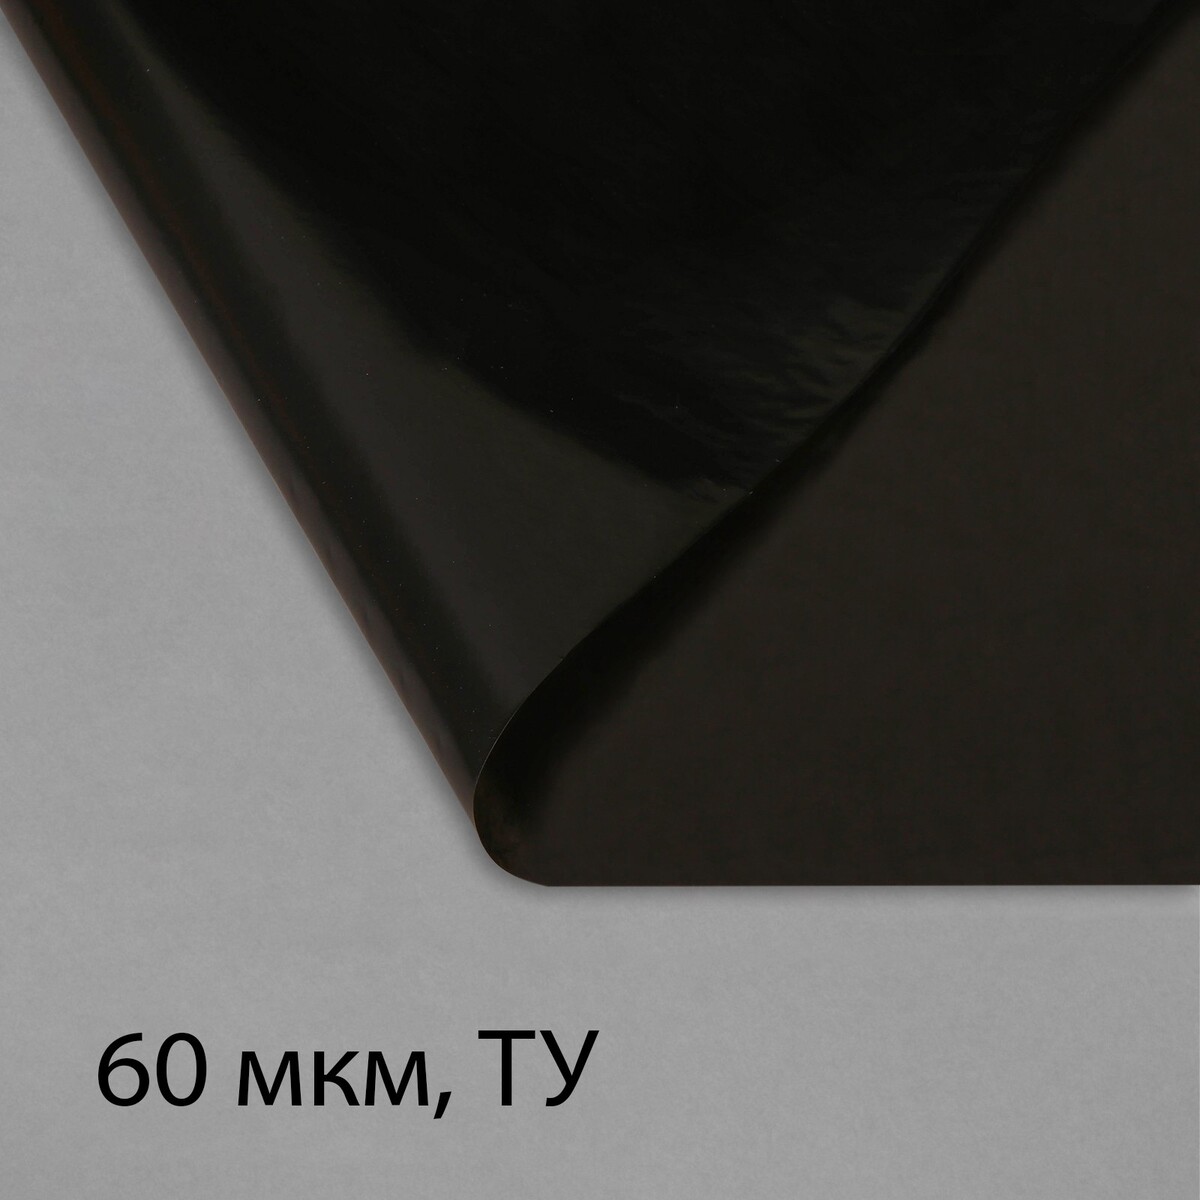 Пленка полиэтиленовая, техническая, 60 мкм, черная, длина 10 м, ширина 3 м, рукав (1.5 м × 2), эконом 50% пленка из полиэтилена техническая толщина 120 мкм черная 10 х 3 м рукав 1 5 м × 2 эконом 50% для дома и сада